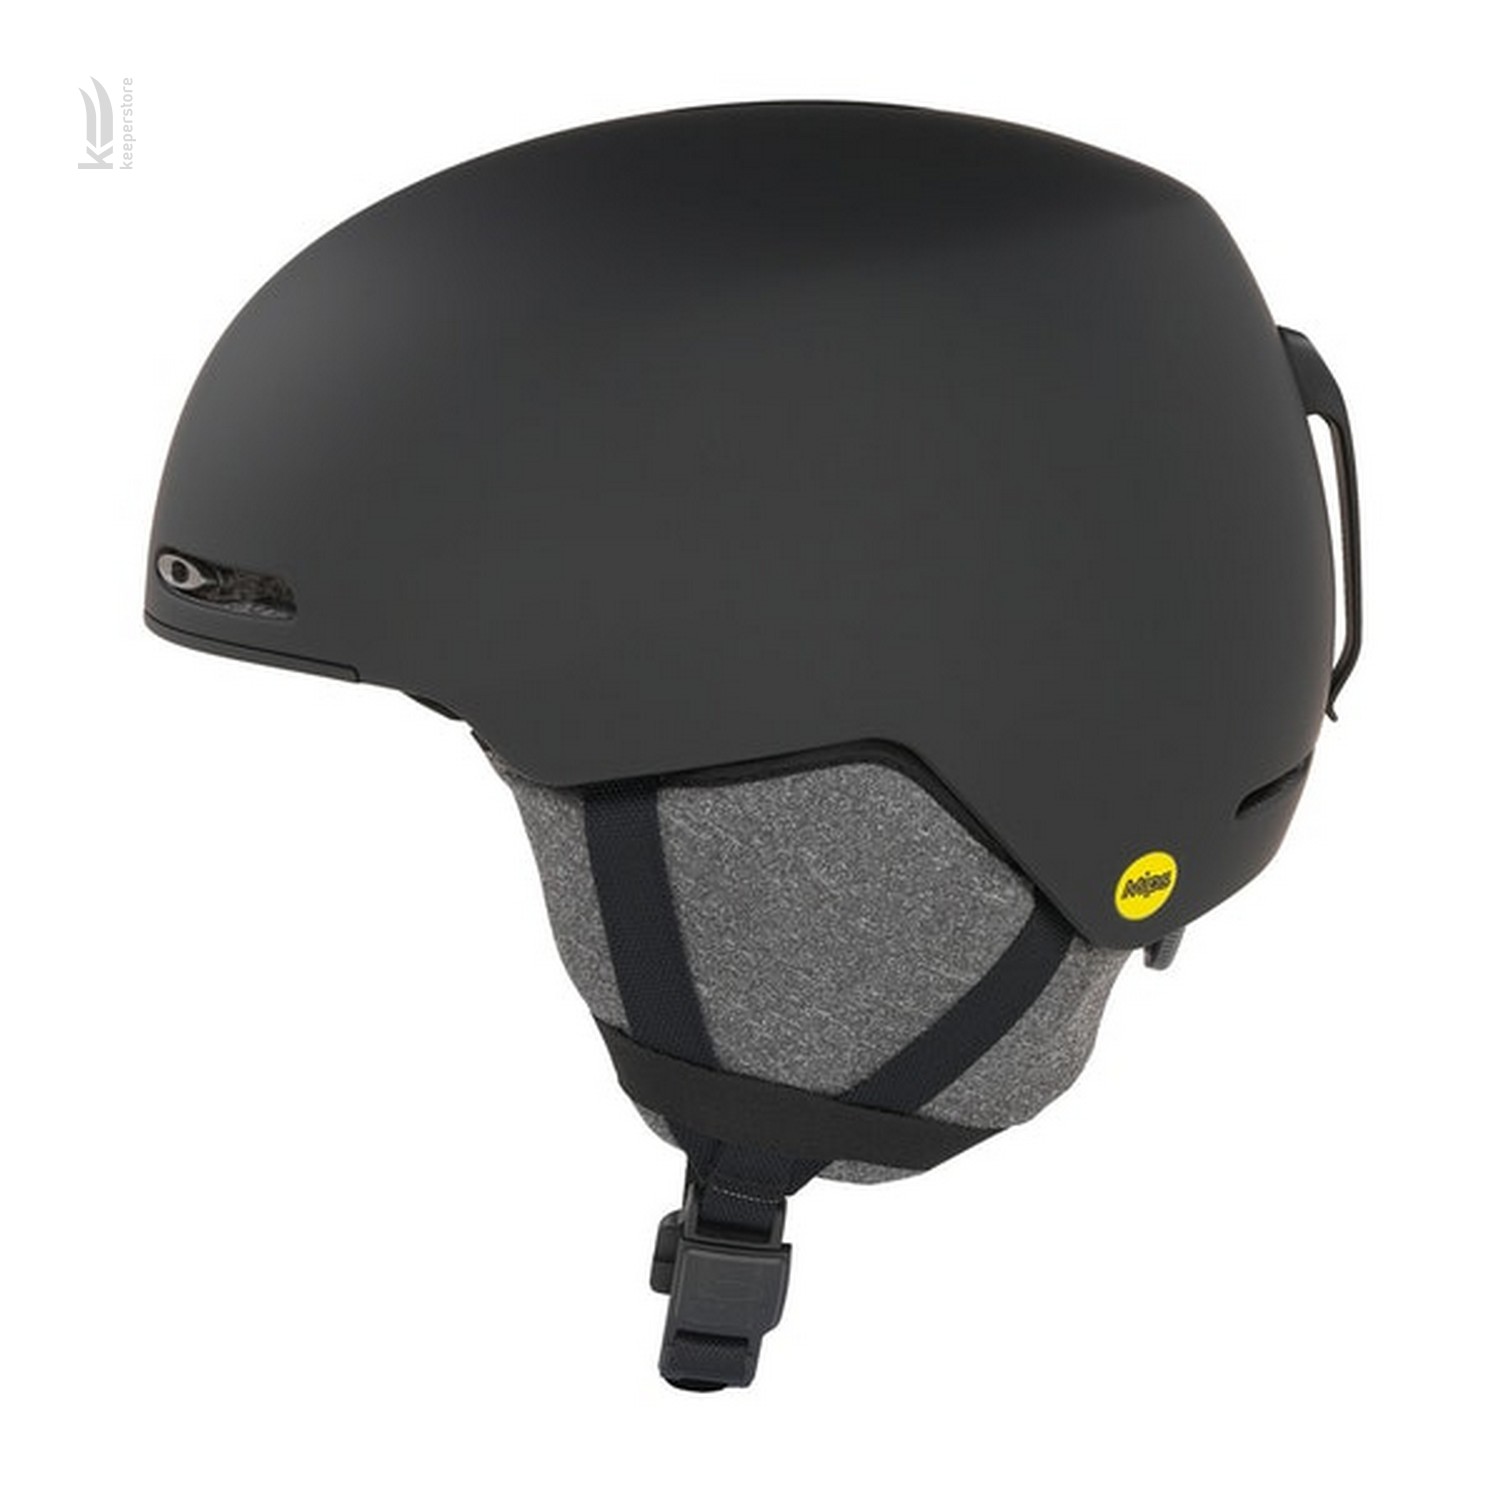 Купить шлем Oakley Mod 1 MIPS Blackout 19/20 в Киеве